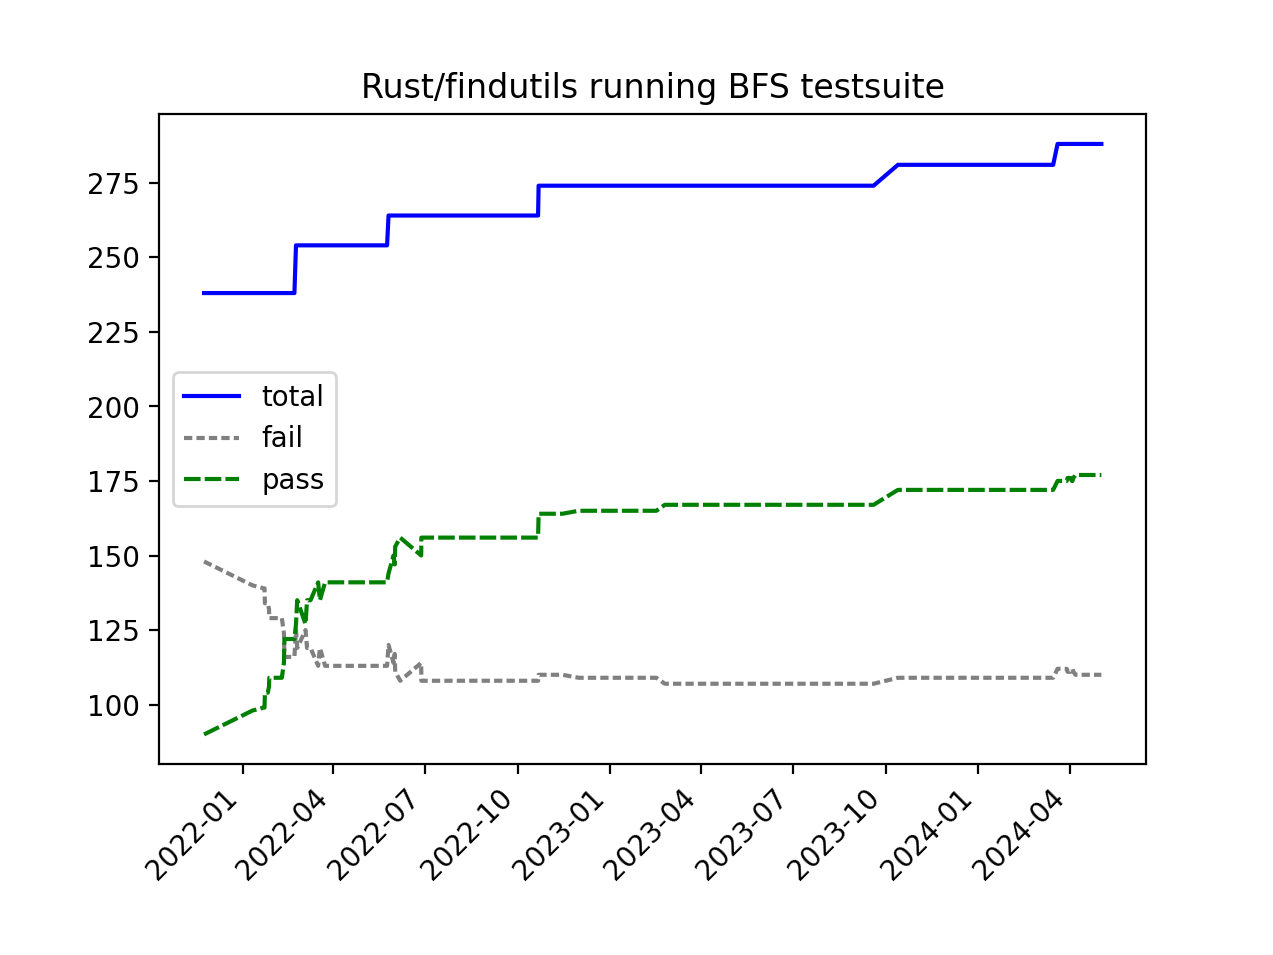 Evolution over time - BFS testsuite